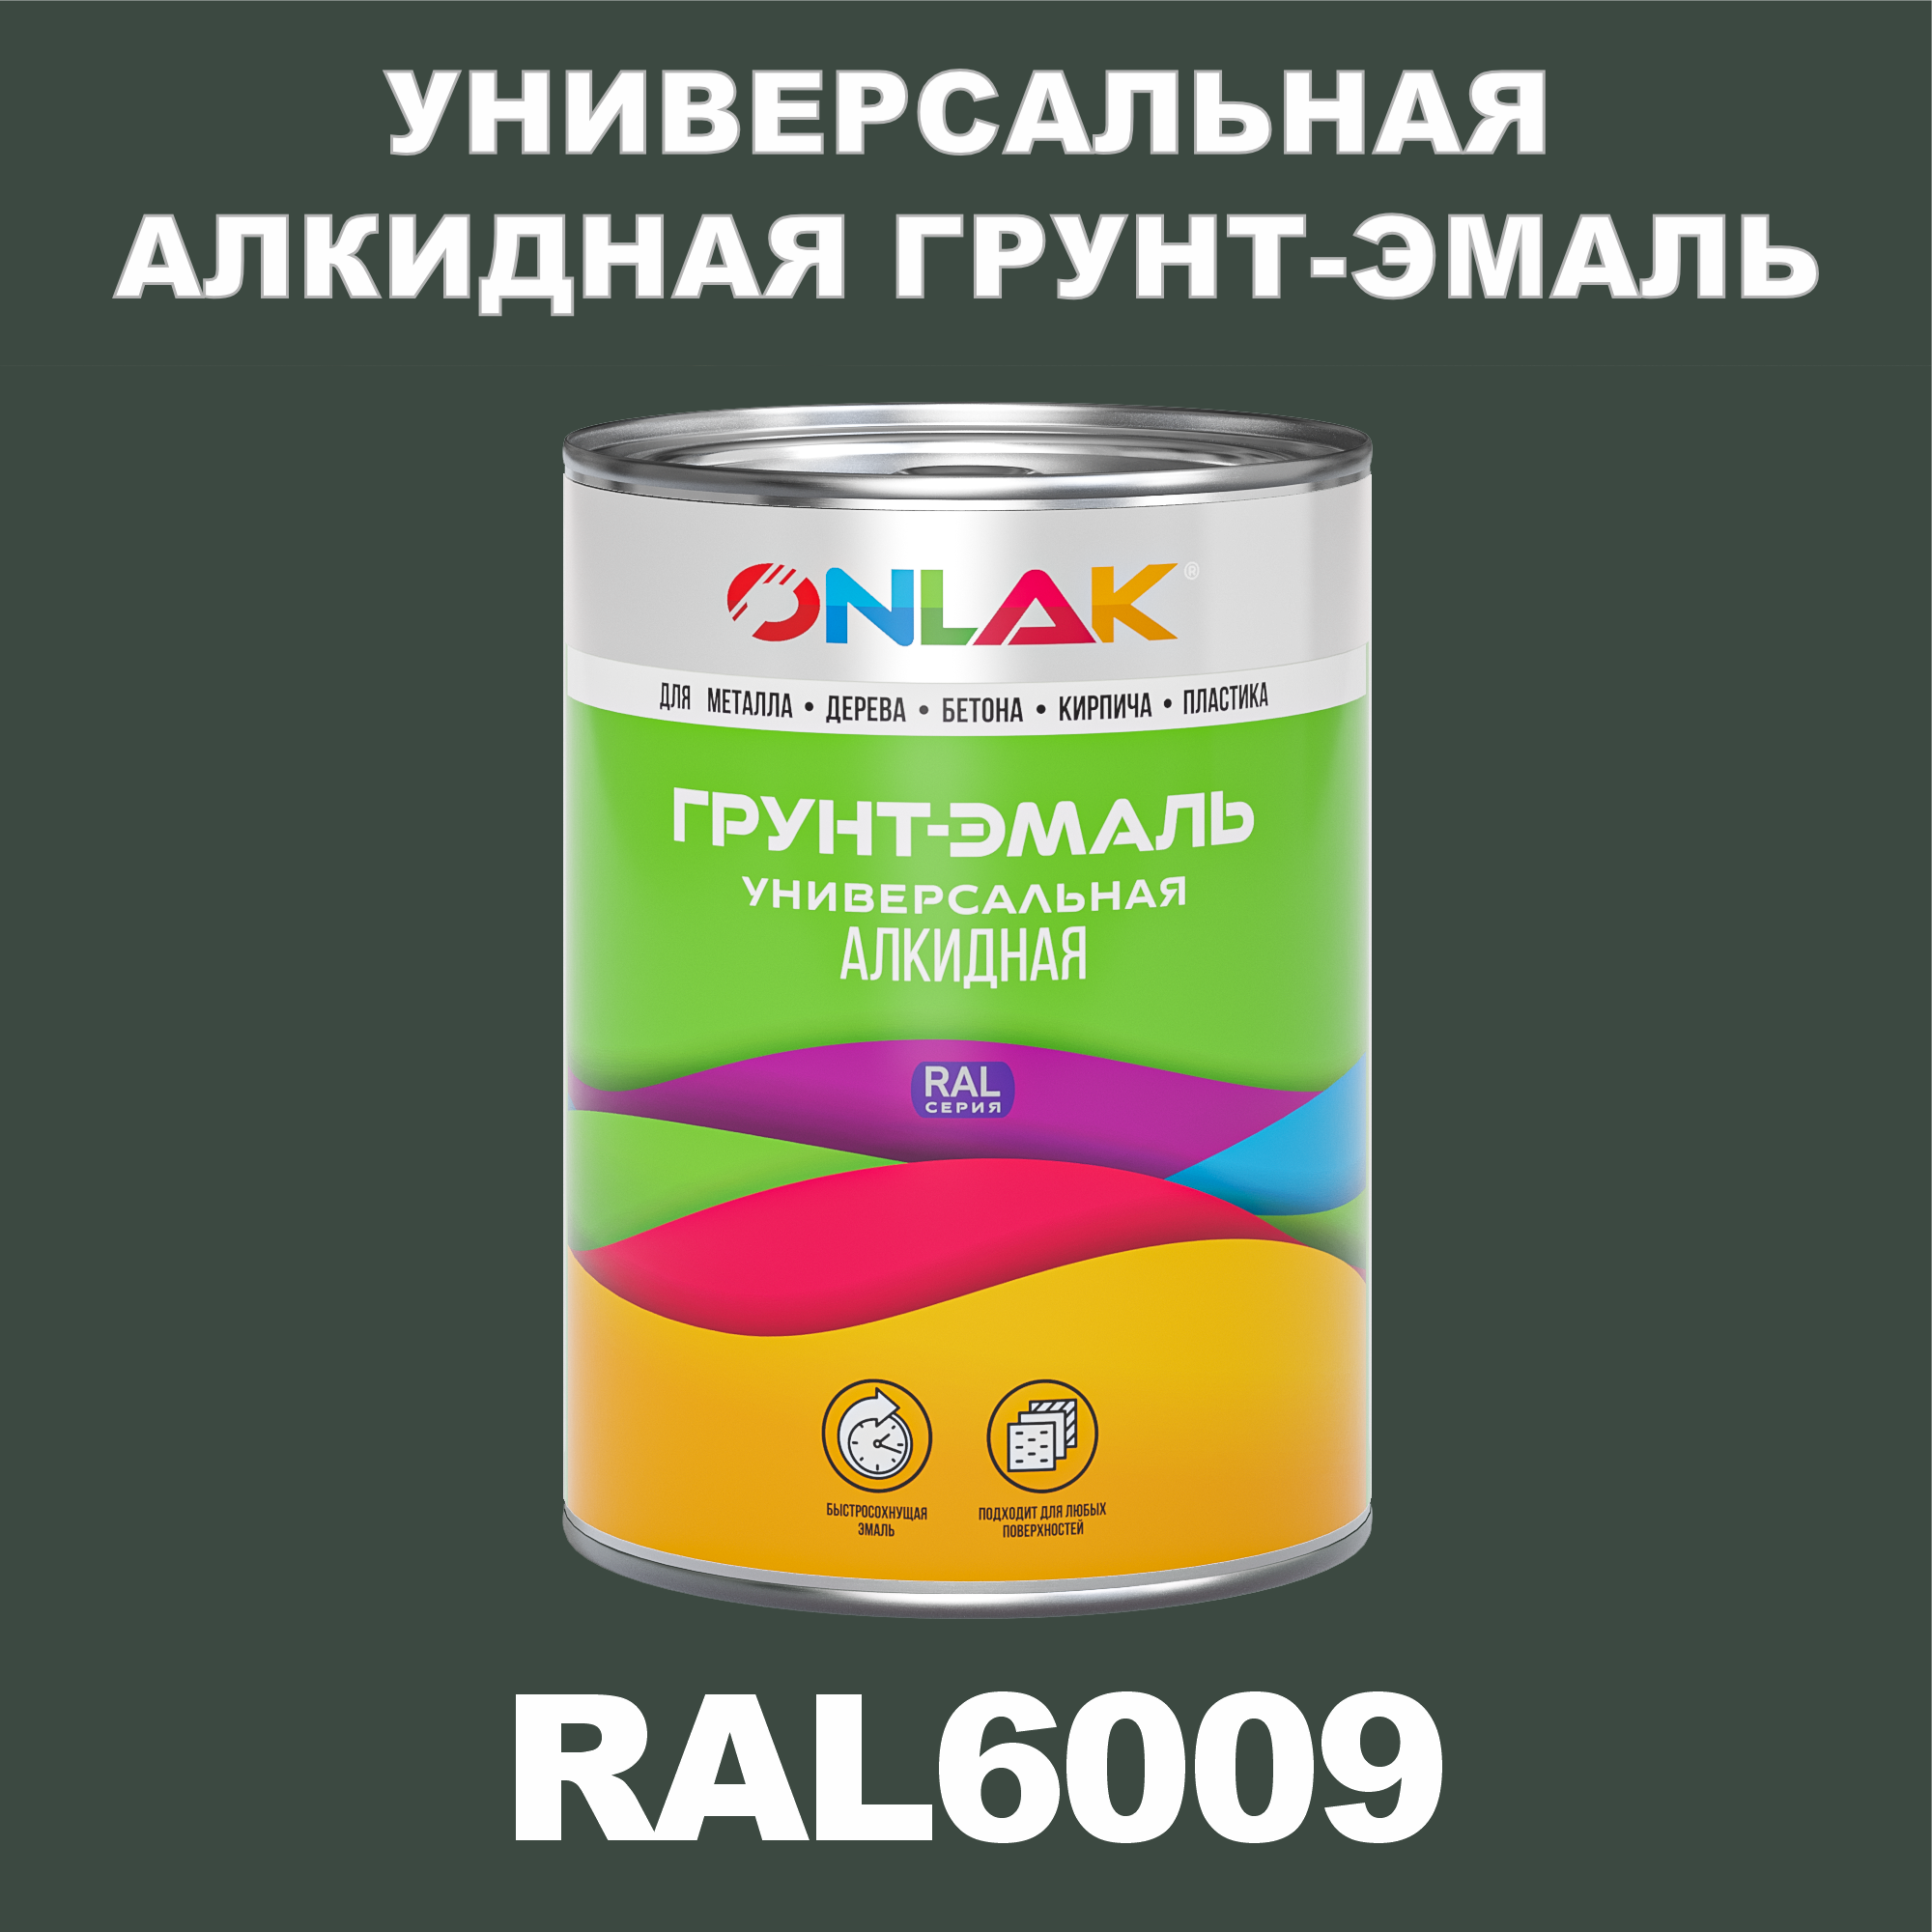 Грунт-эмаль ONLAK 1К RAL6009 антикоррозионная алкидная по металлу по ржавчине 1 кг грунт эмаль престиж по ржавчине алкидная зеленая 1 9 кг